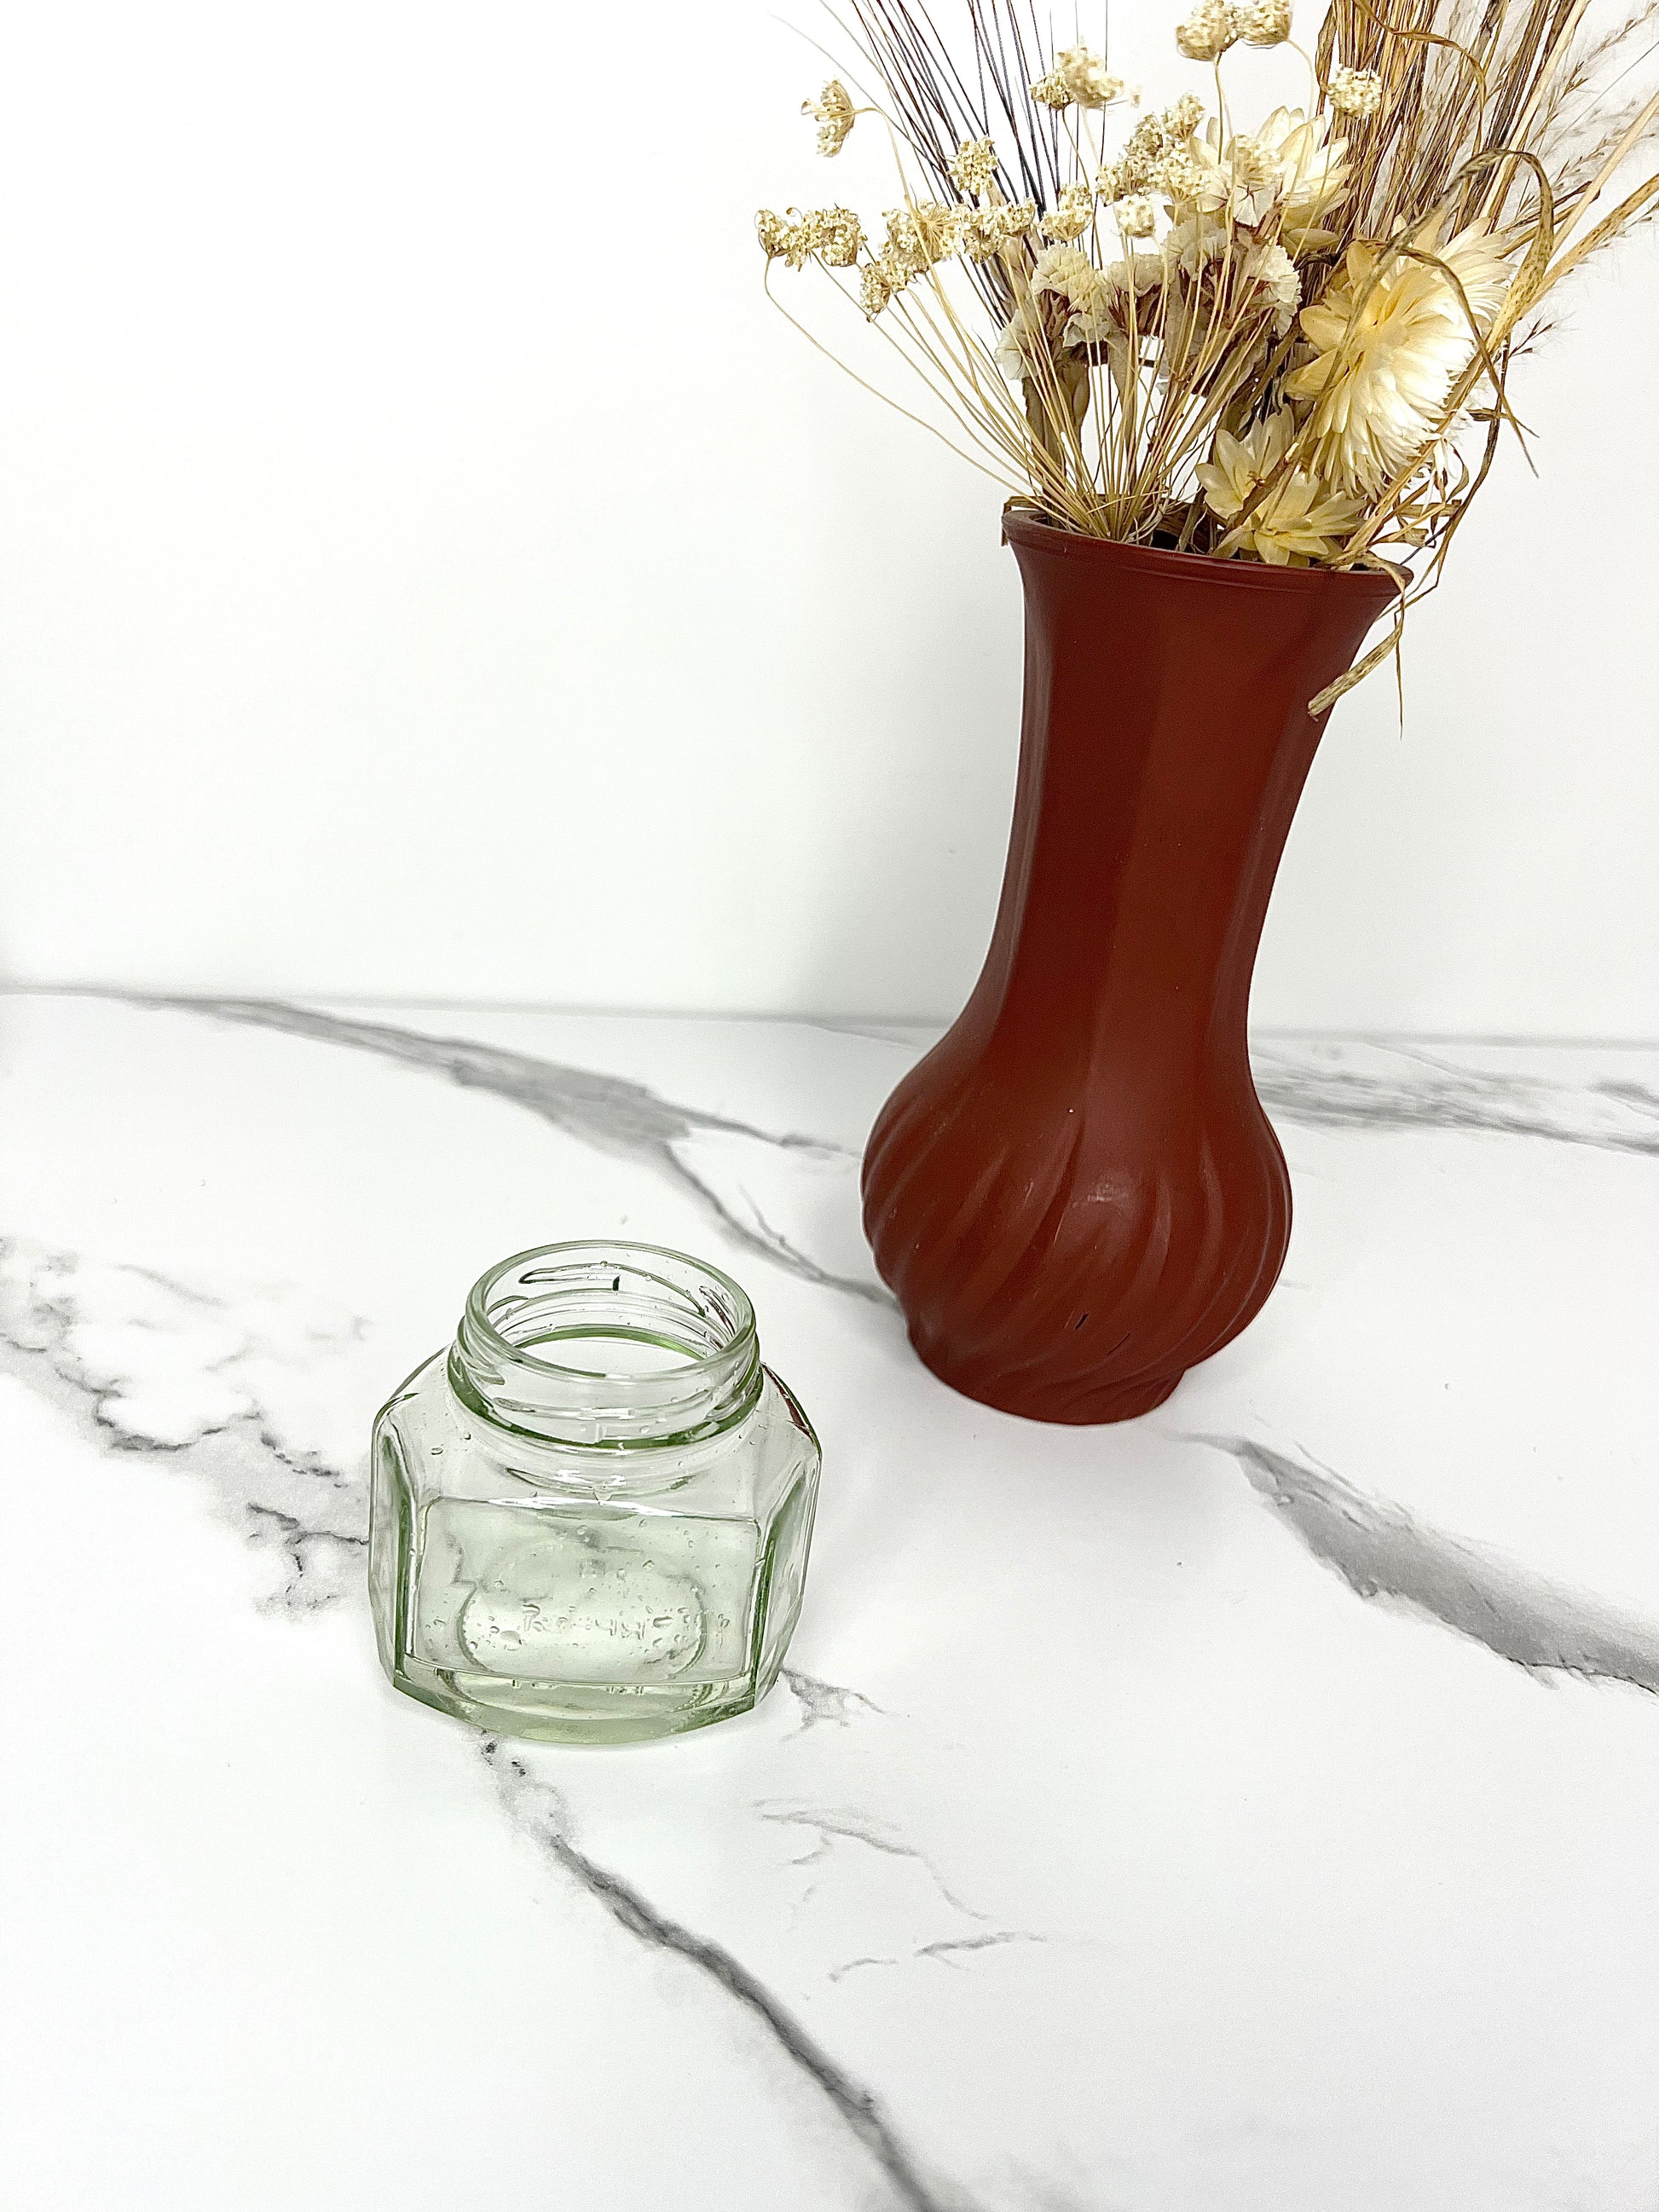 Aloe Vera Extract - Product Image For Mangata Dispensary